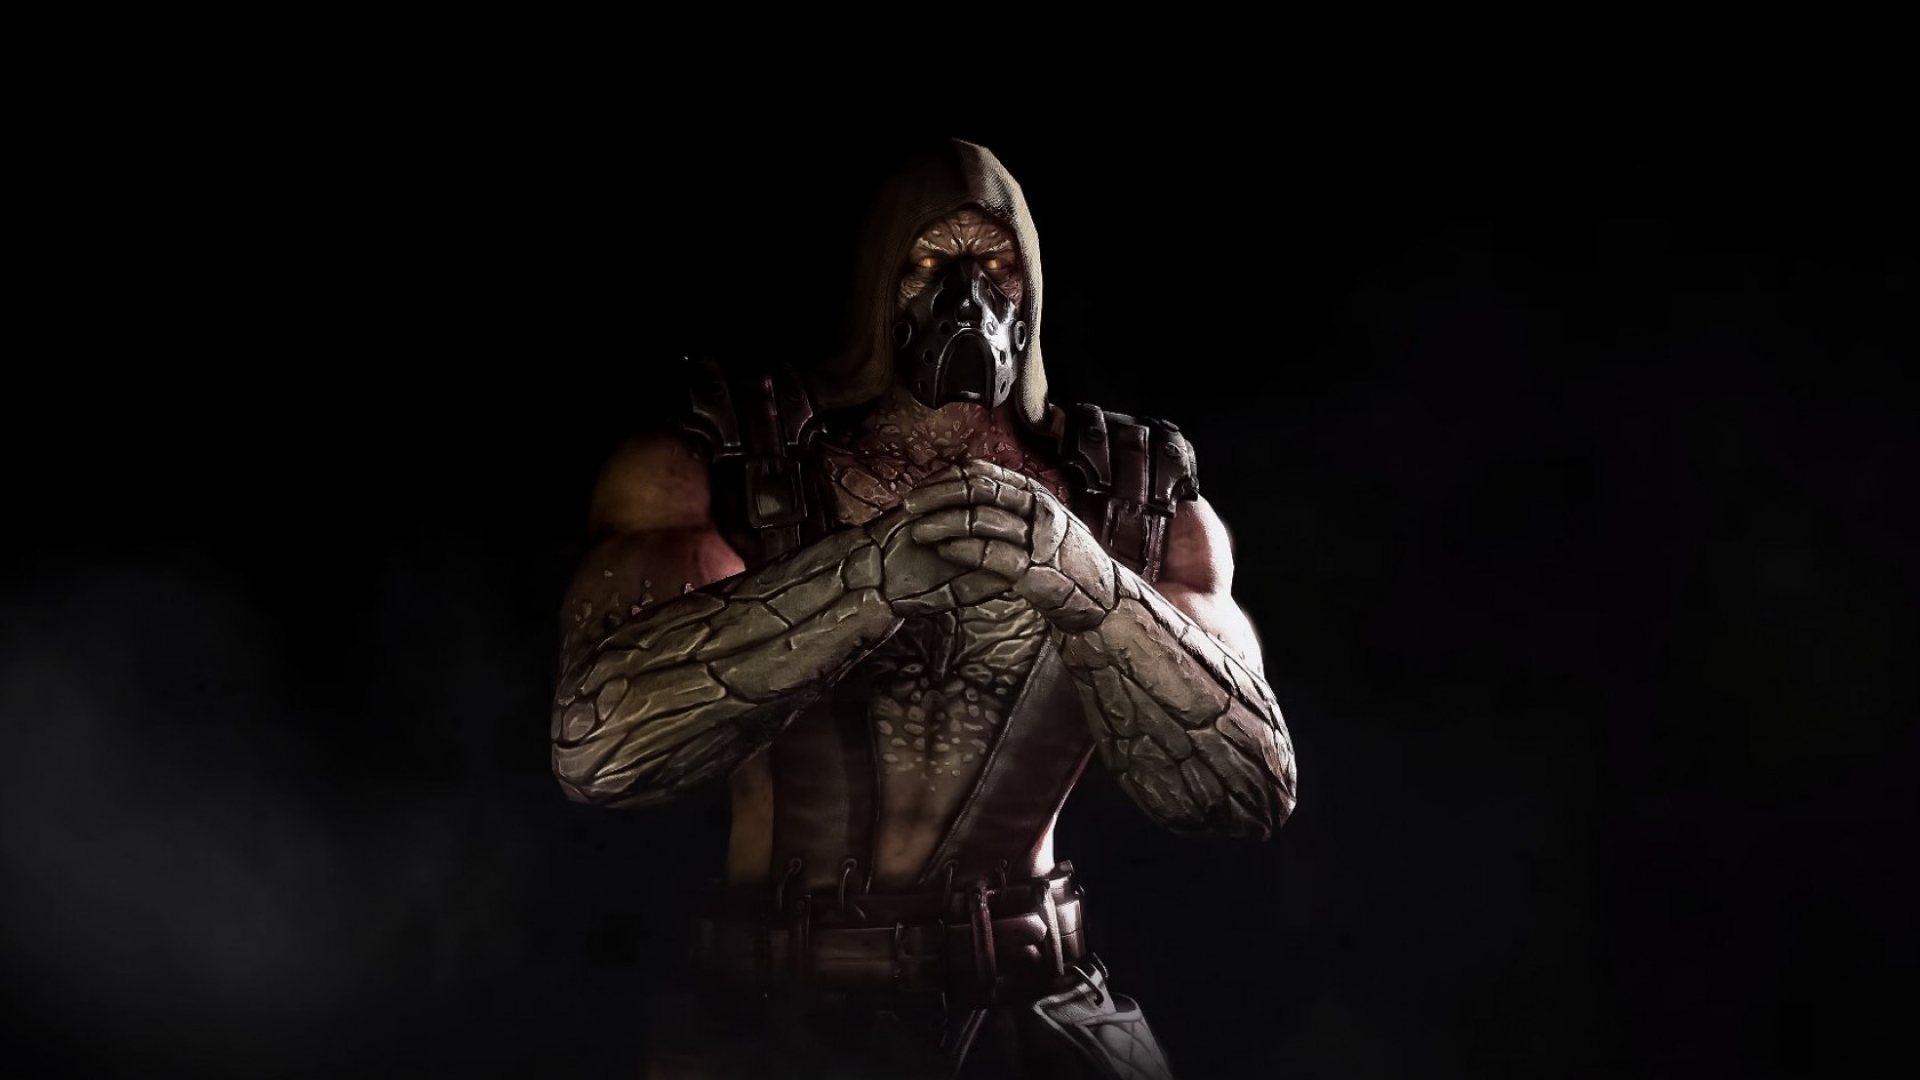 Mortal Kombat X HD Wallpaper Search More Games High Definition 1080p